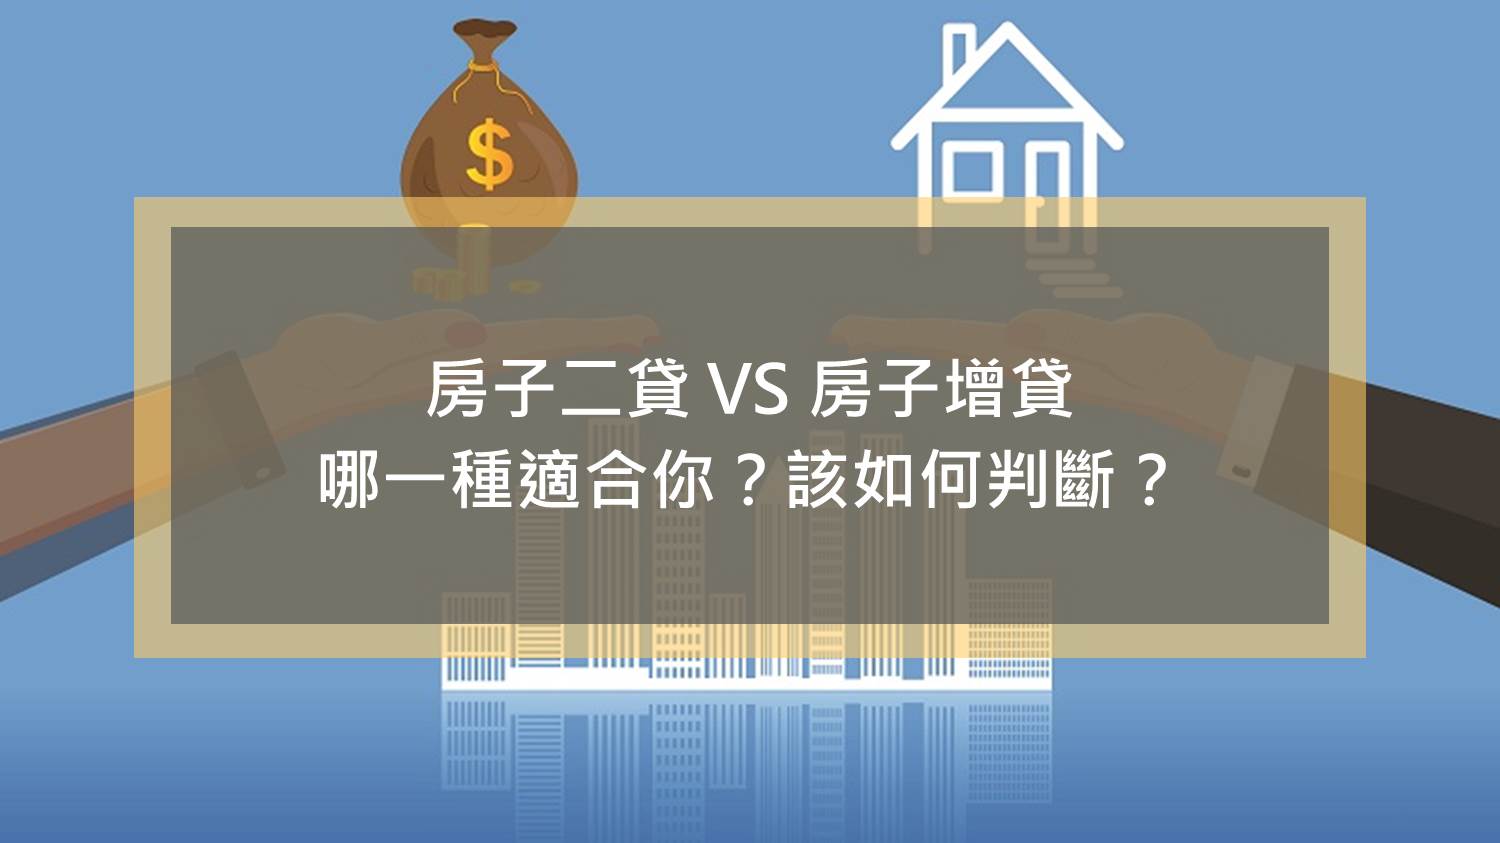 房子二貸 VS 房子增貸，哪一種適合你？該如何判斷？